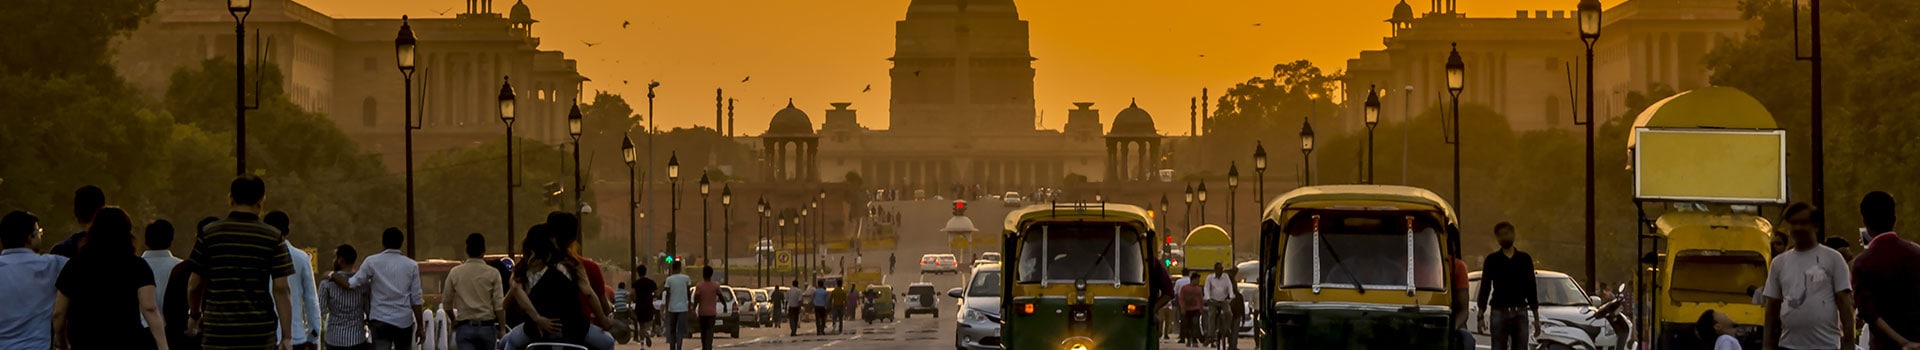 Santander - Delhi